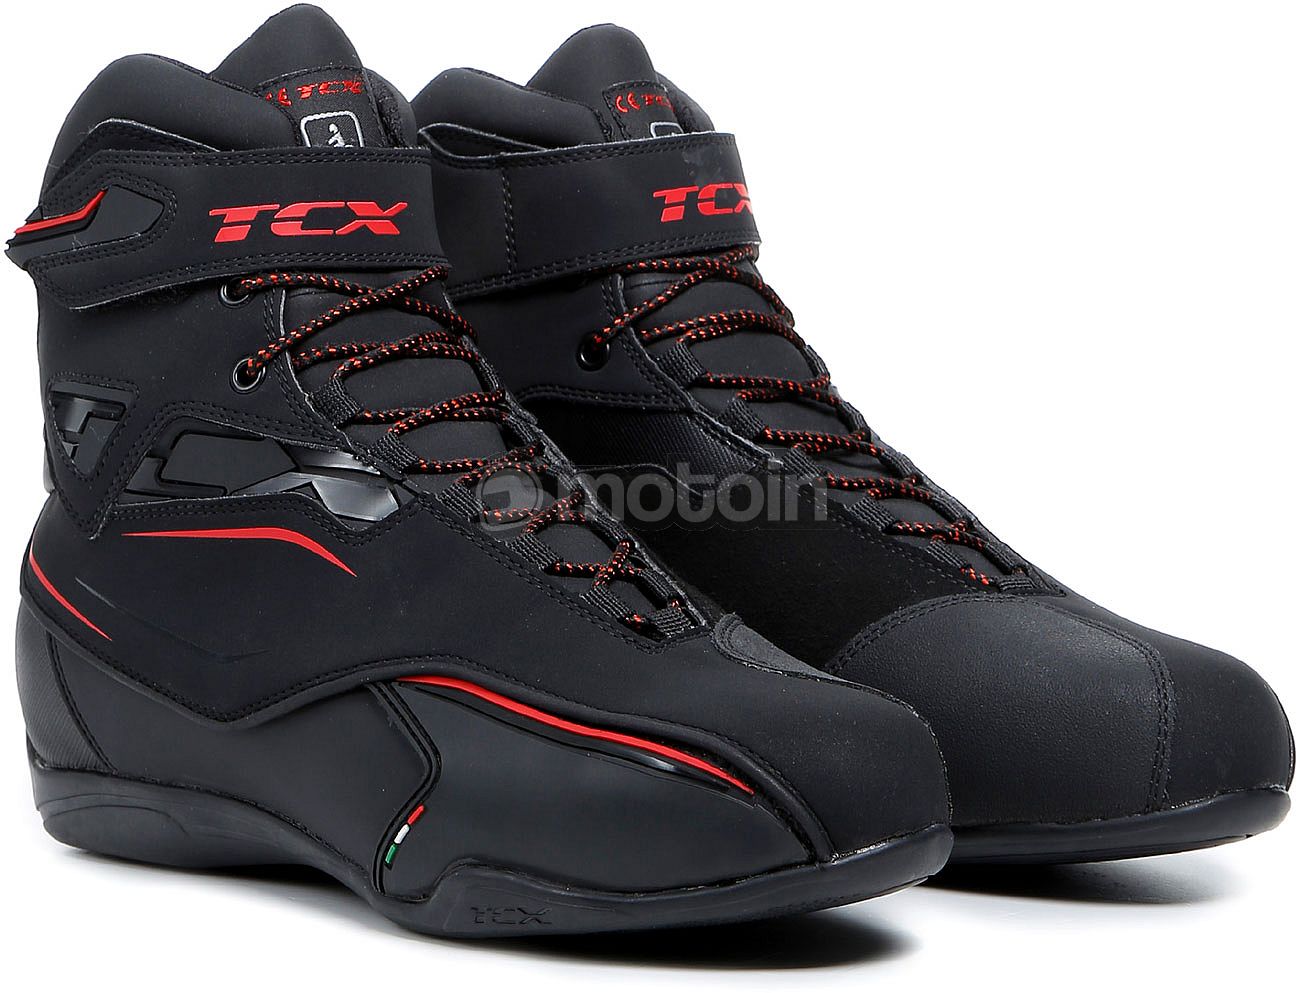 Chaussures moto imperméable TCX avec protection malléole taille 42